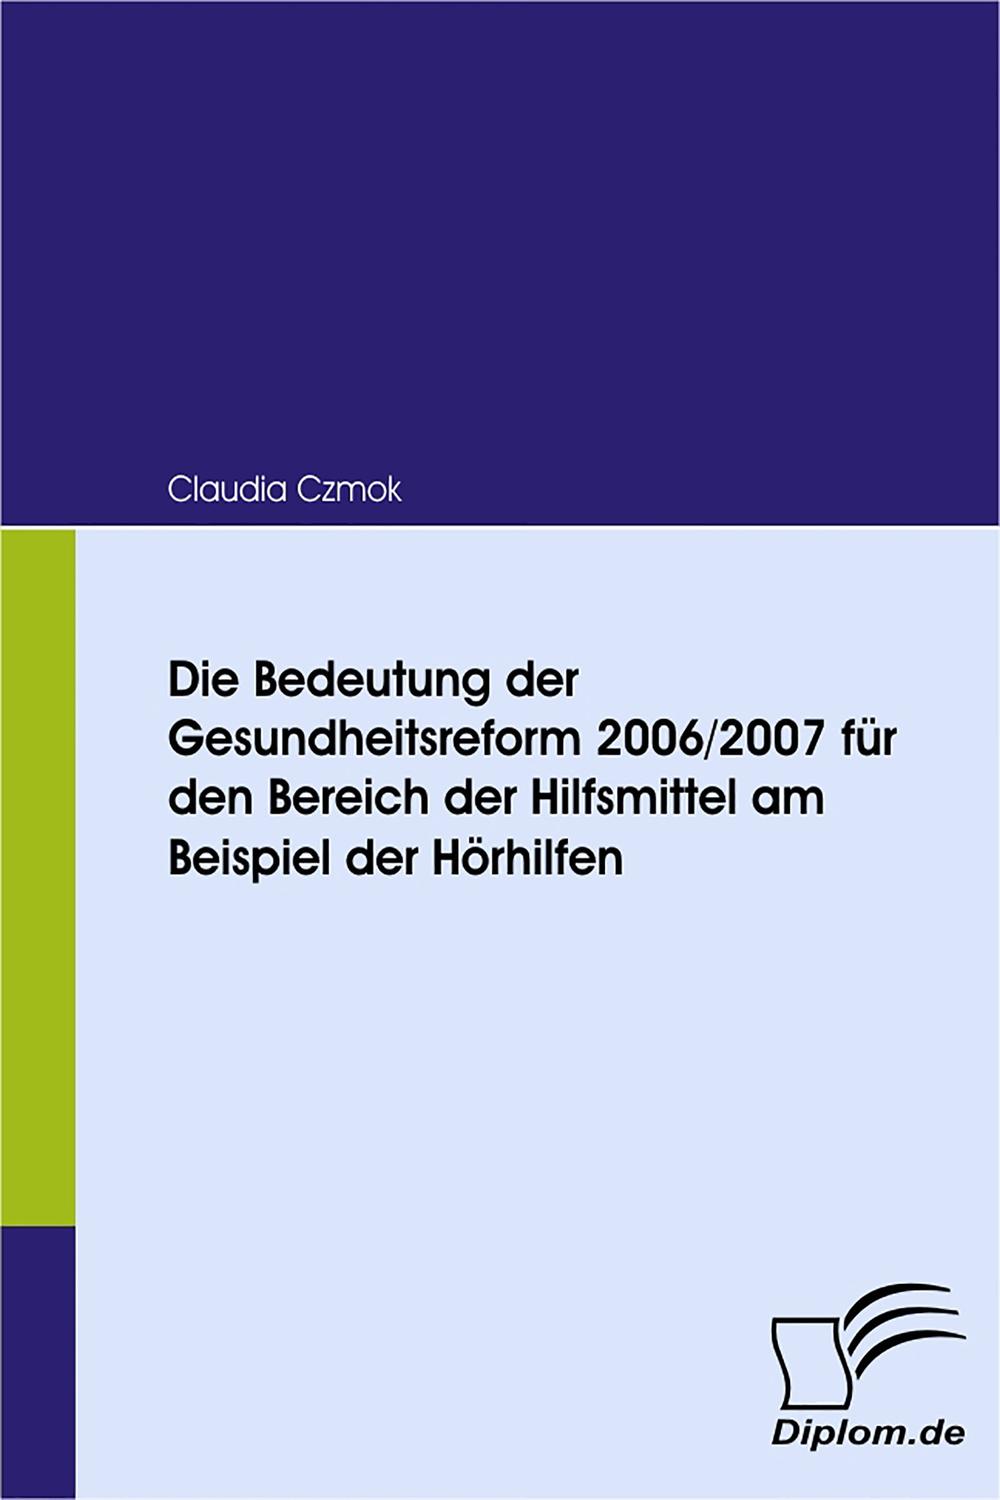 Die Bedeutung der Gesundheitsreform 2006/2007 für den Bereich der Hilfsmittel am Beispiel der Hörhilfen - Claudia Czmok